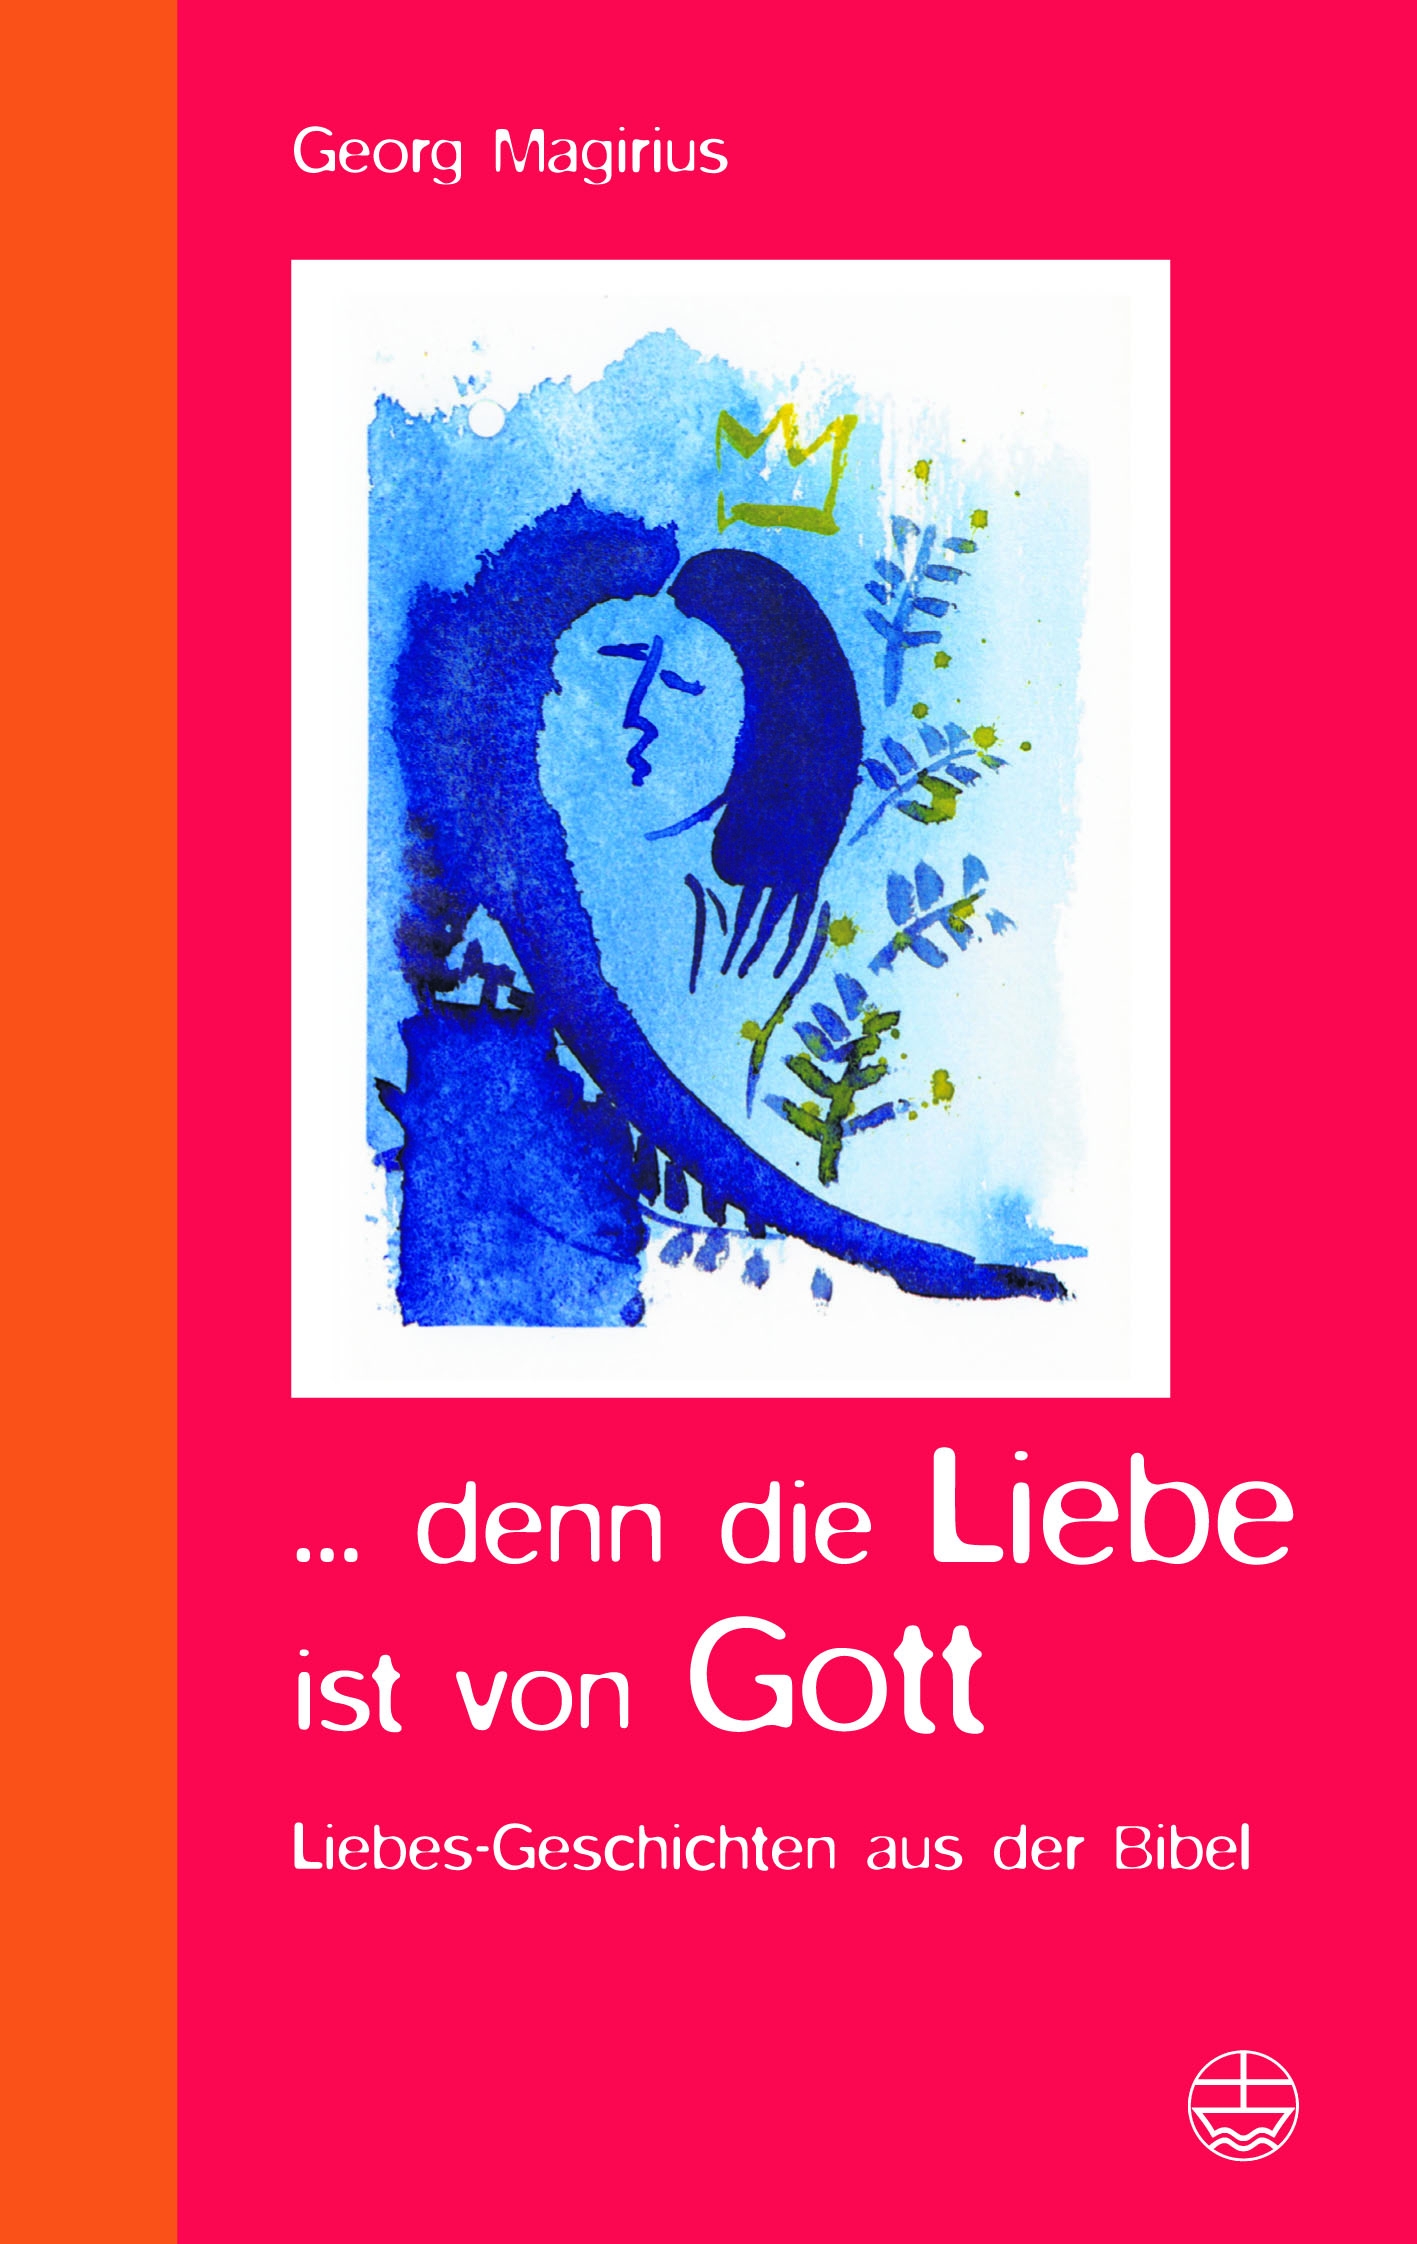 Cover des Buches "... denn die Liebe ist von Gott" - Georg Magirius erzählt in München unter dem Titel "Fromme Hochzeitsnacht und 7 tote Ehemänner" Liebesgeschichten aus dem Buch